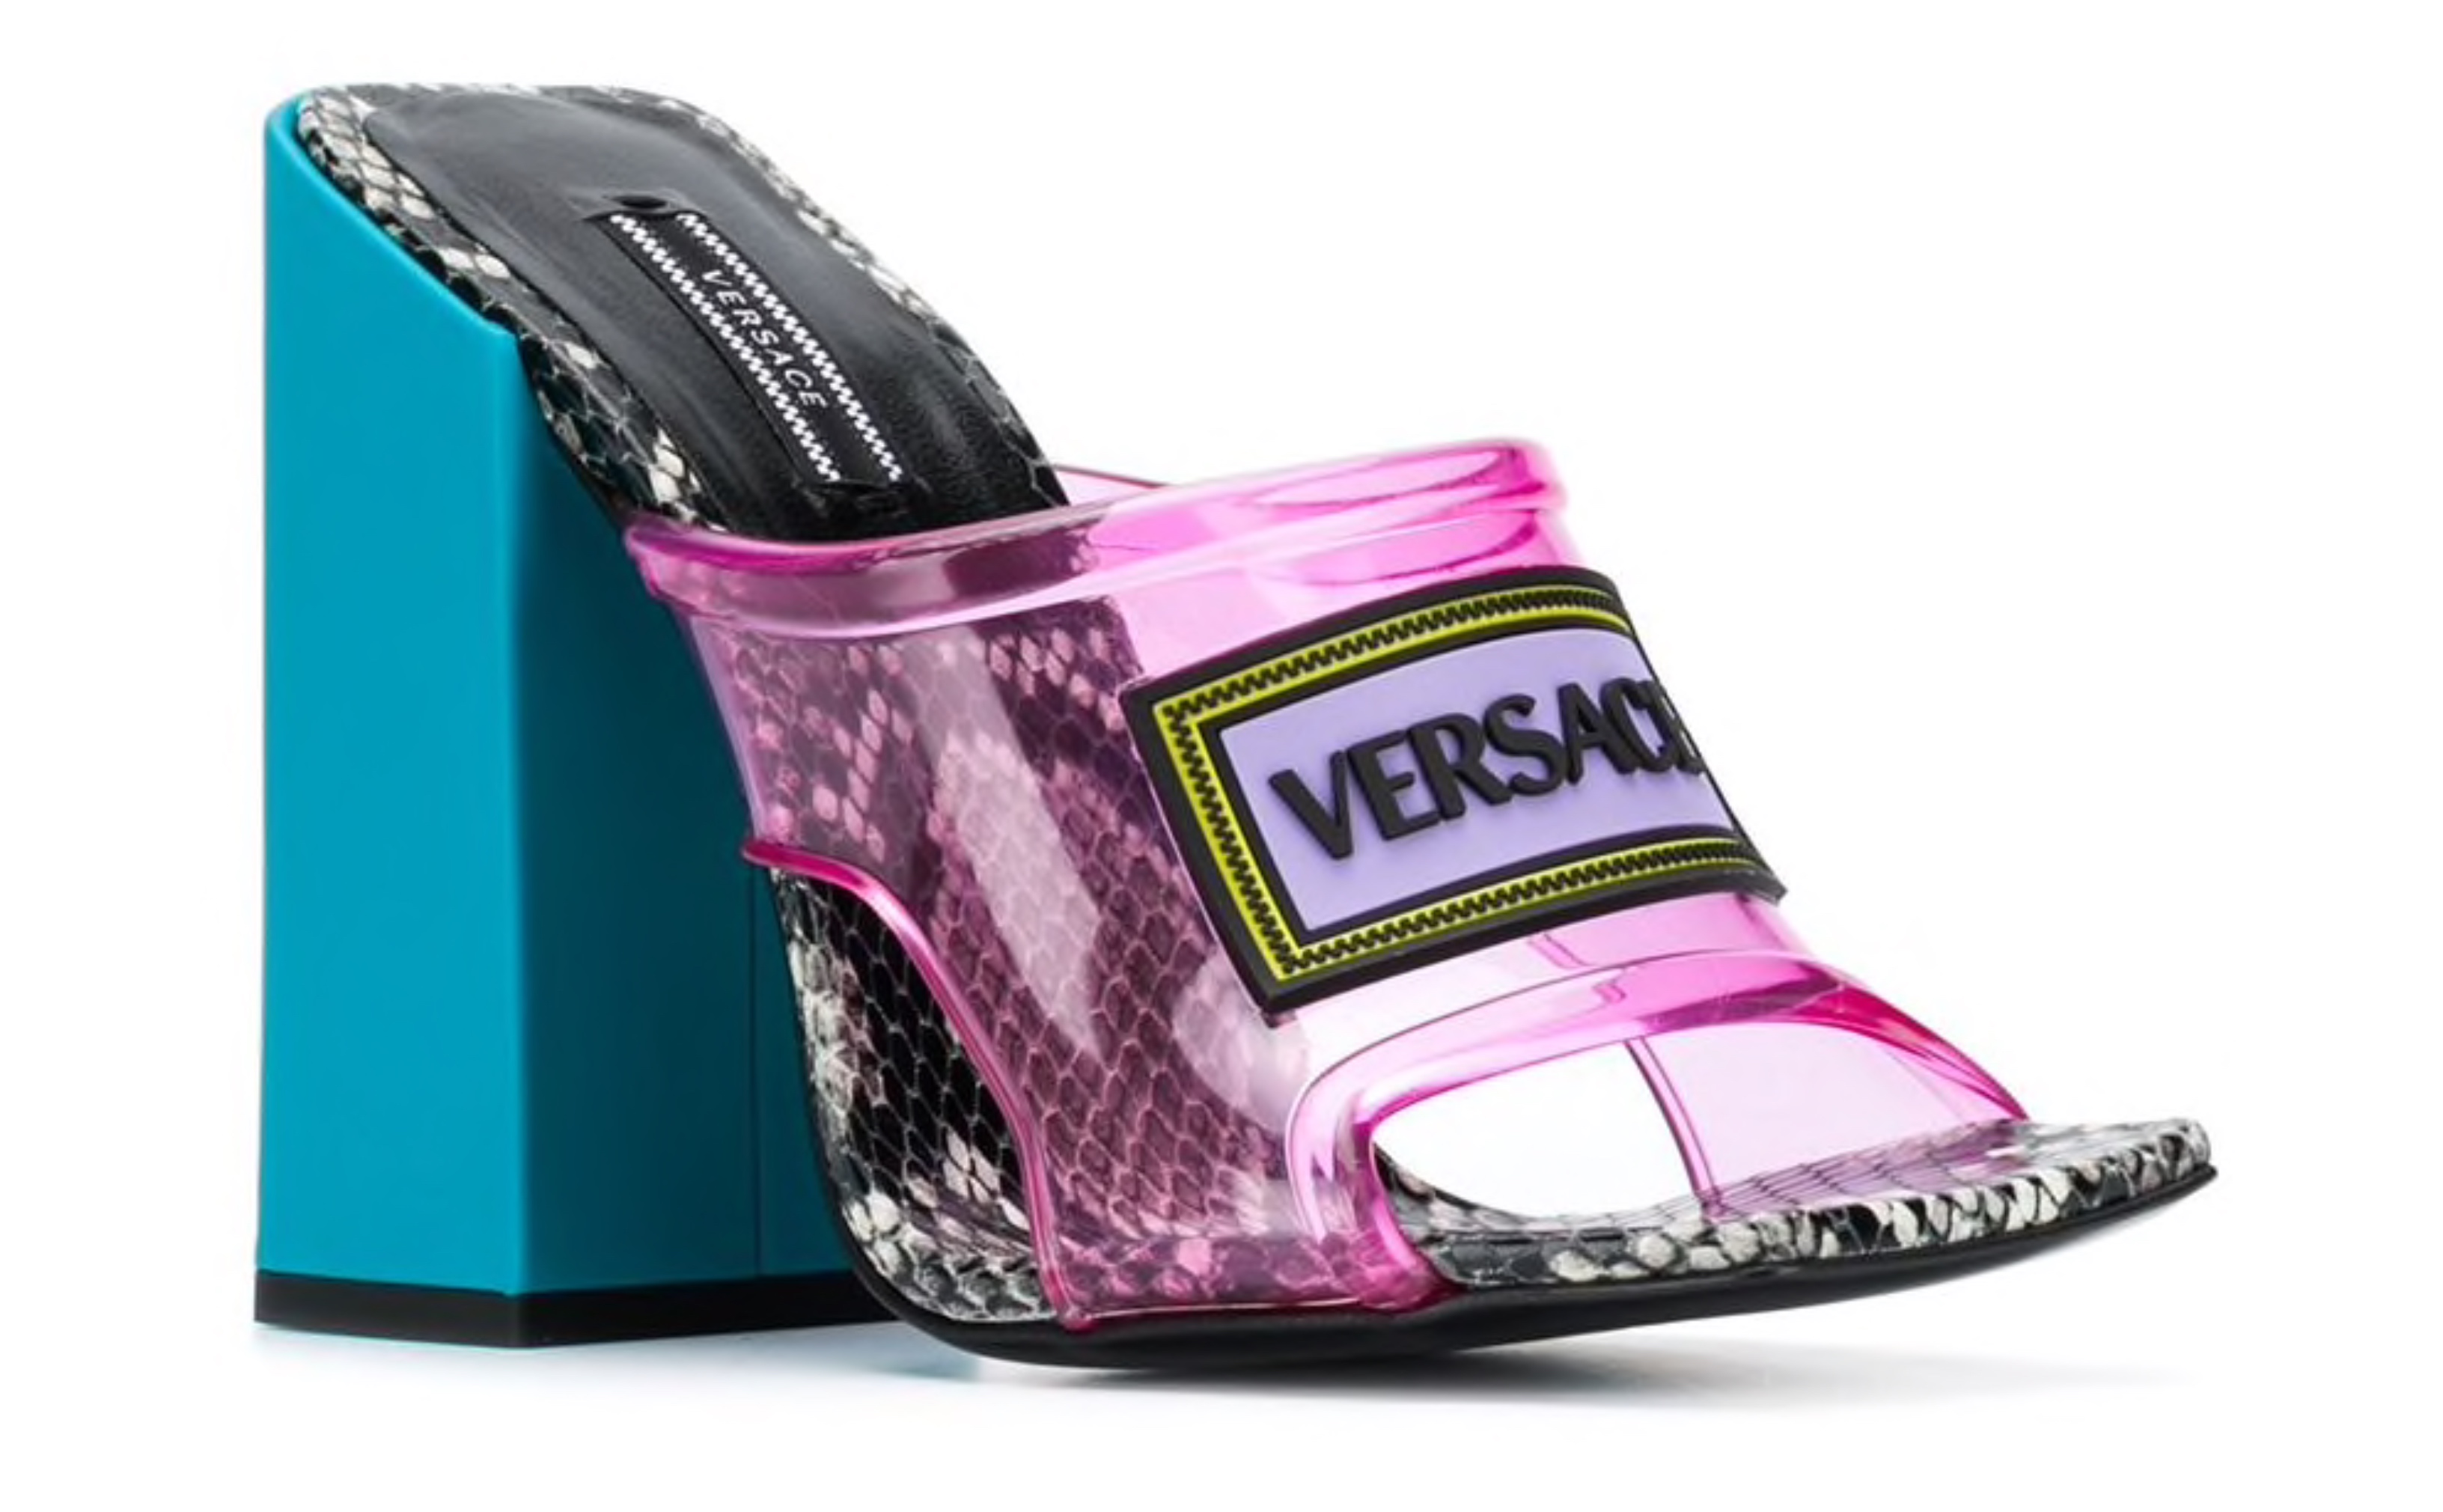 versace 90s vintage logo high heel sandals